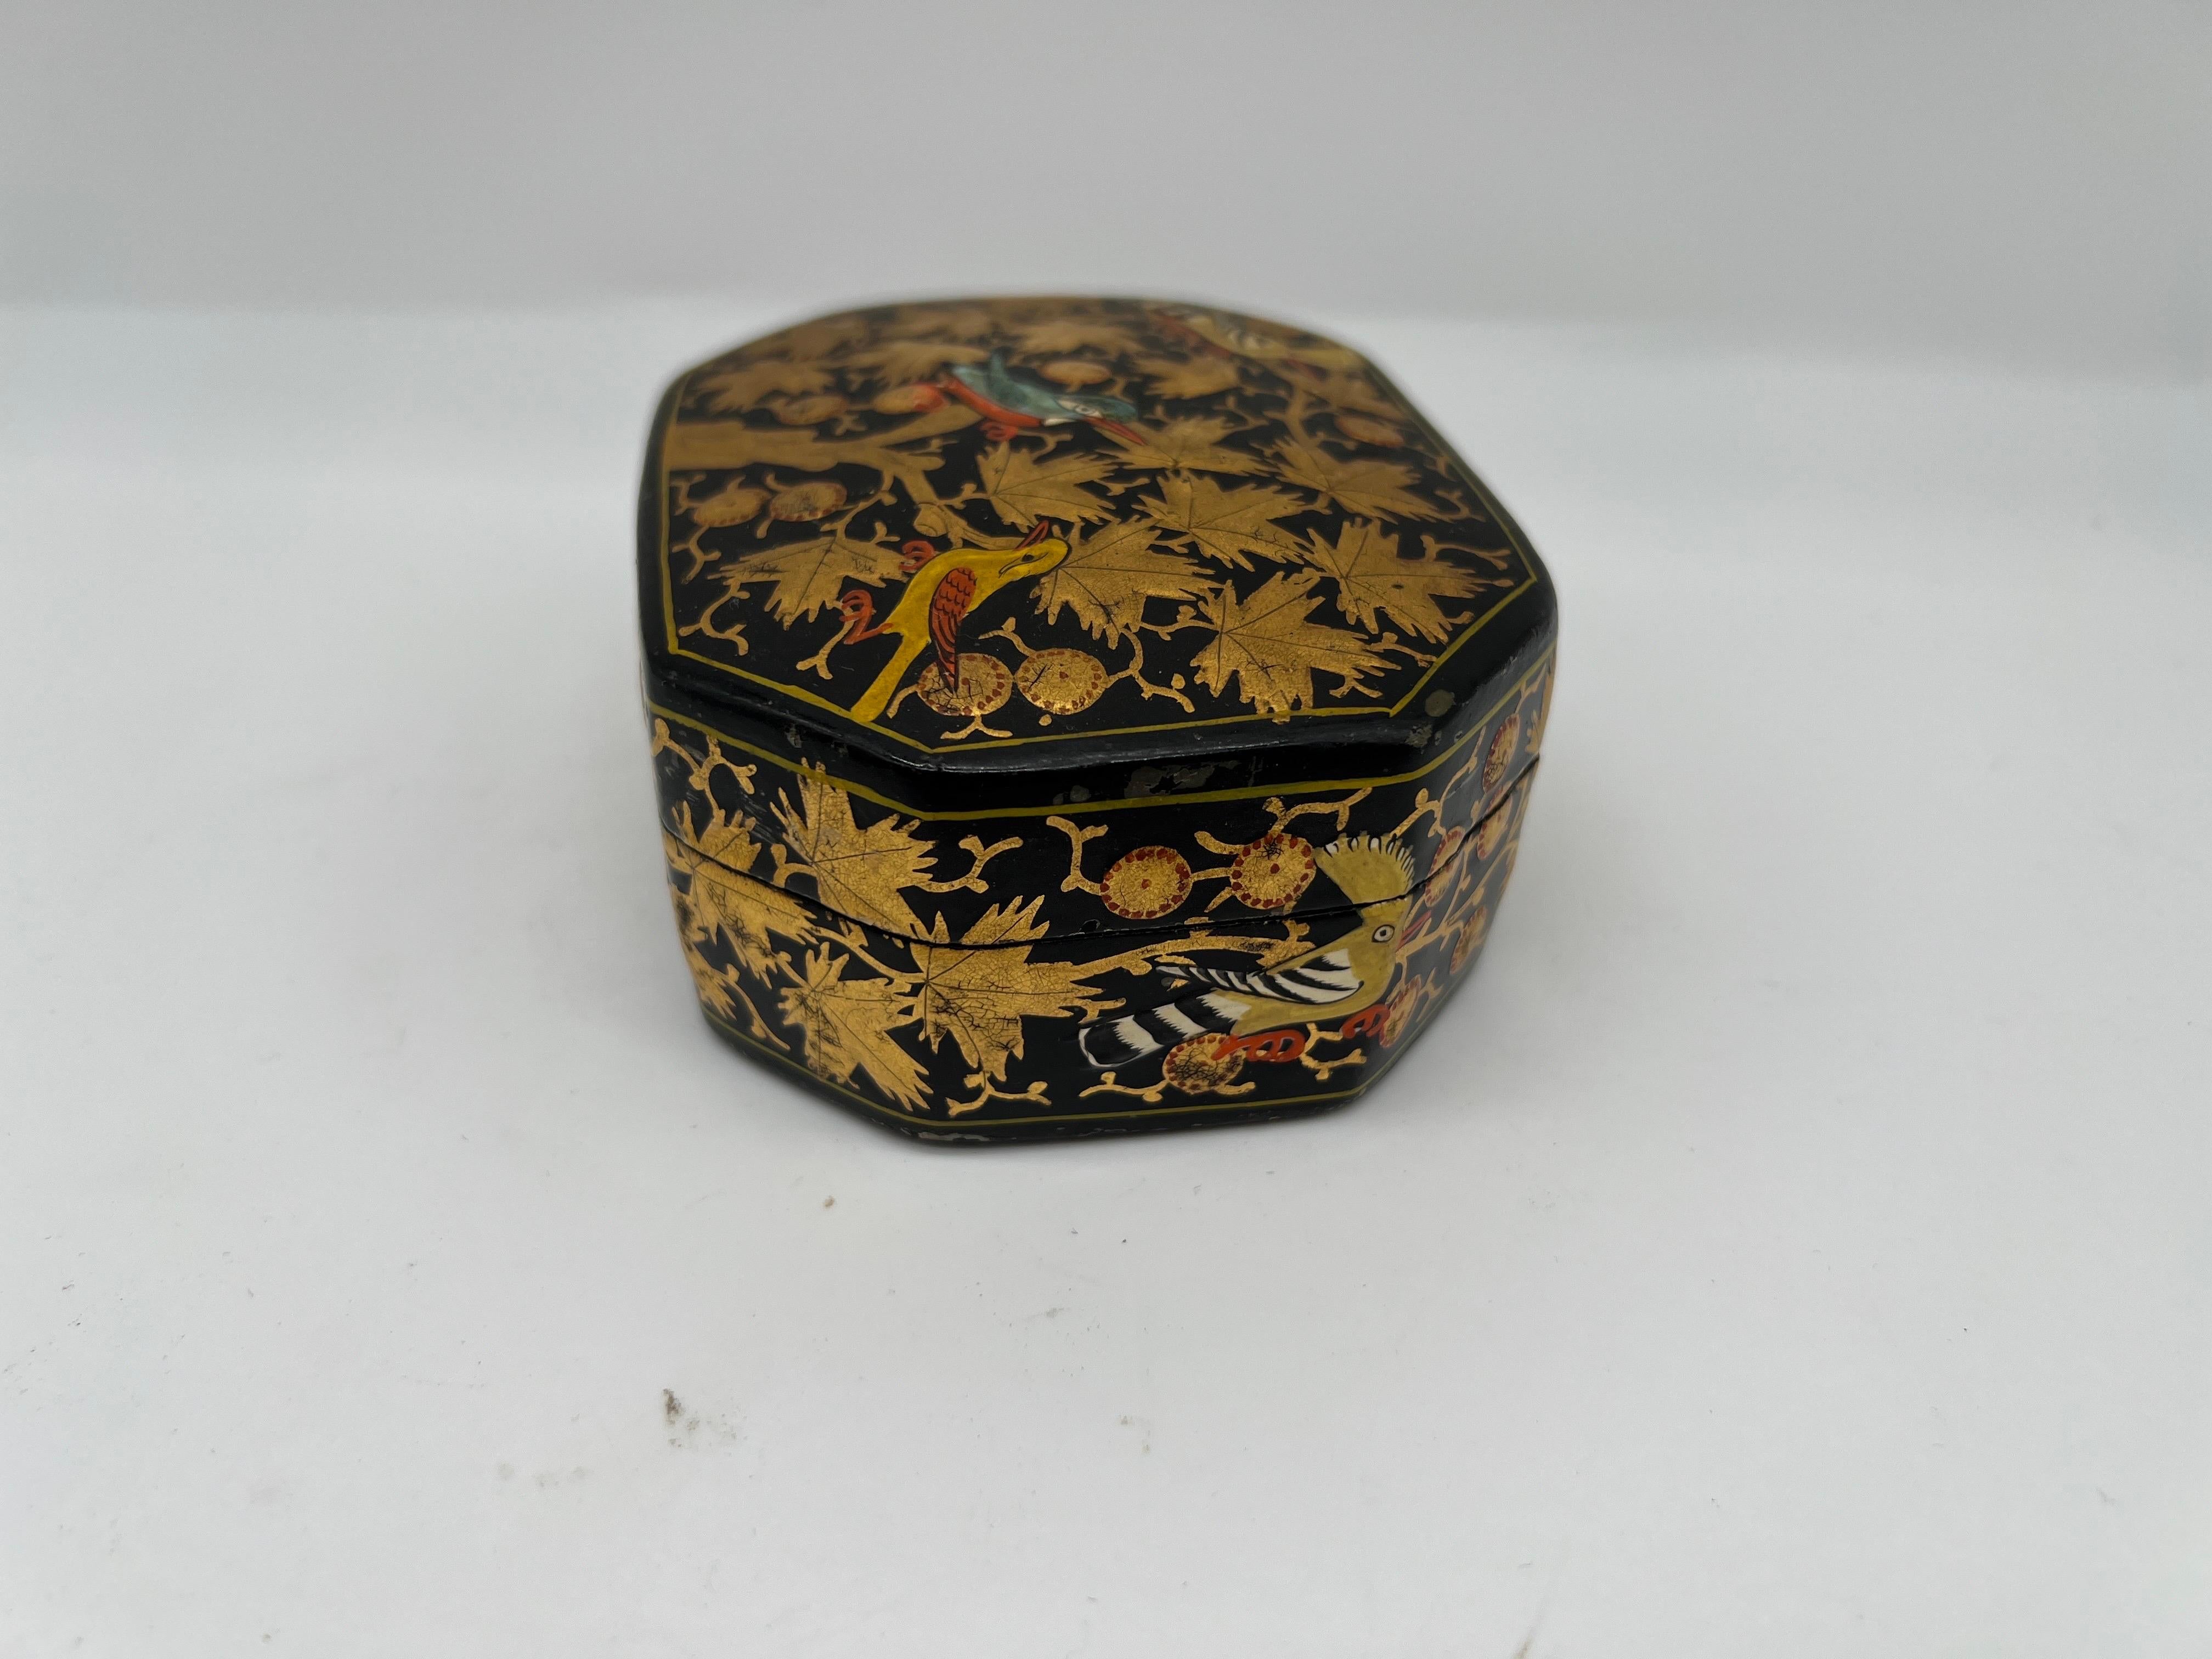 Cachemire, début du 20e siècle.
Boîte ancienne en laque noire avec une décoration florale dorée et des oiseaux multicolores sur toute la surface. 